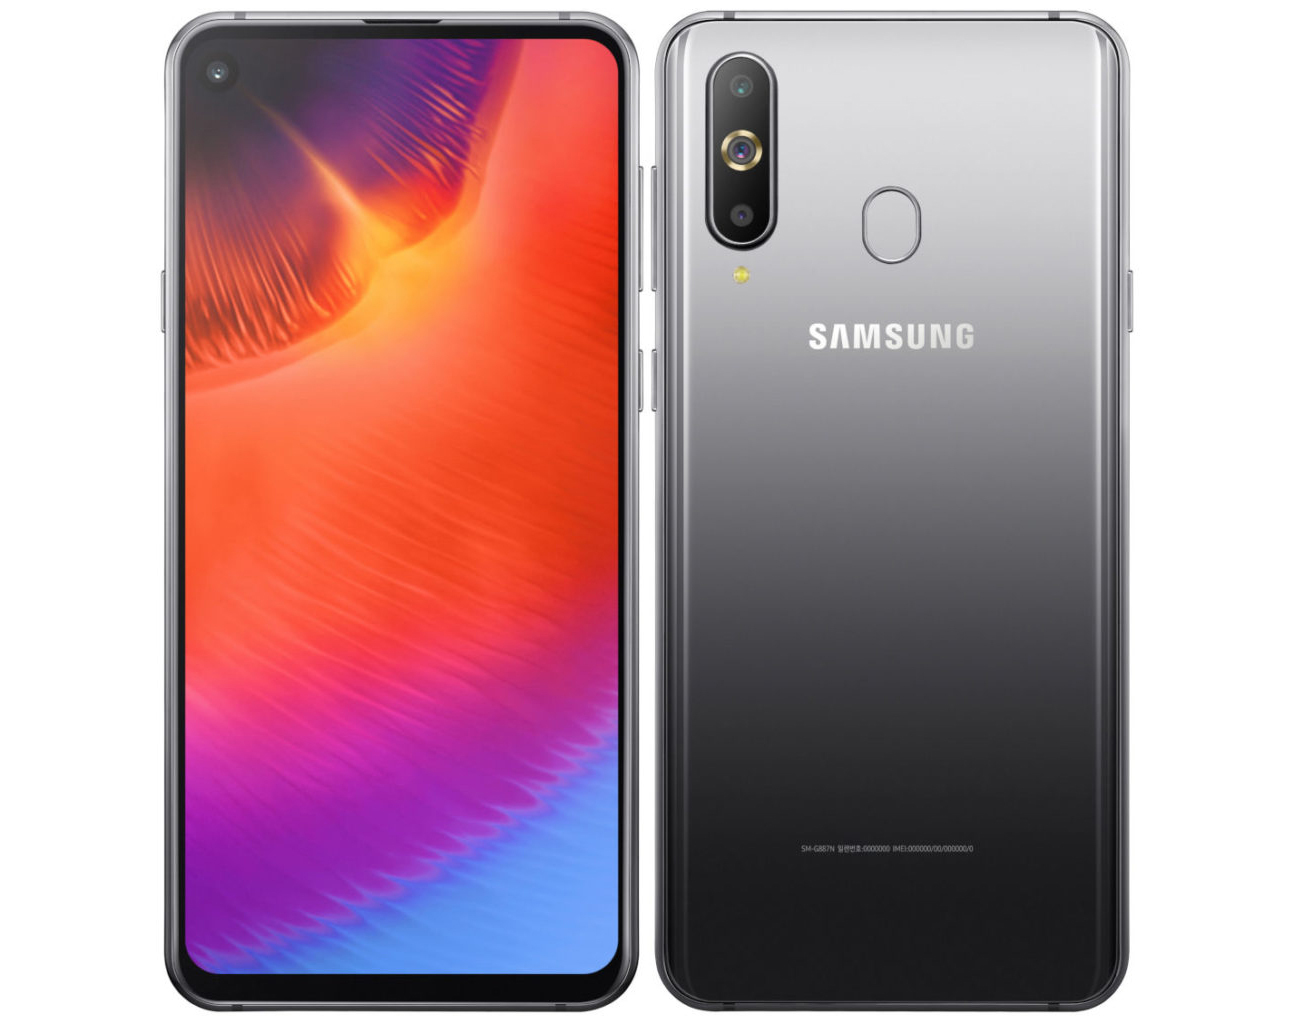 Nuevo Samsung Galaxy A9 Pro 2019: características, imágenes y más